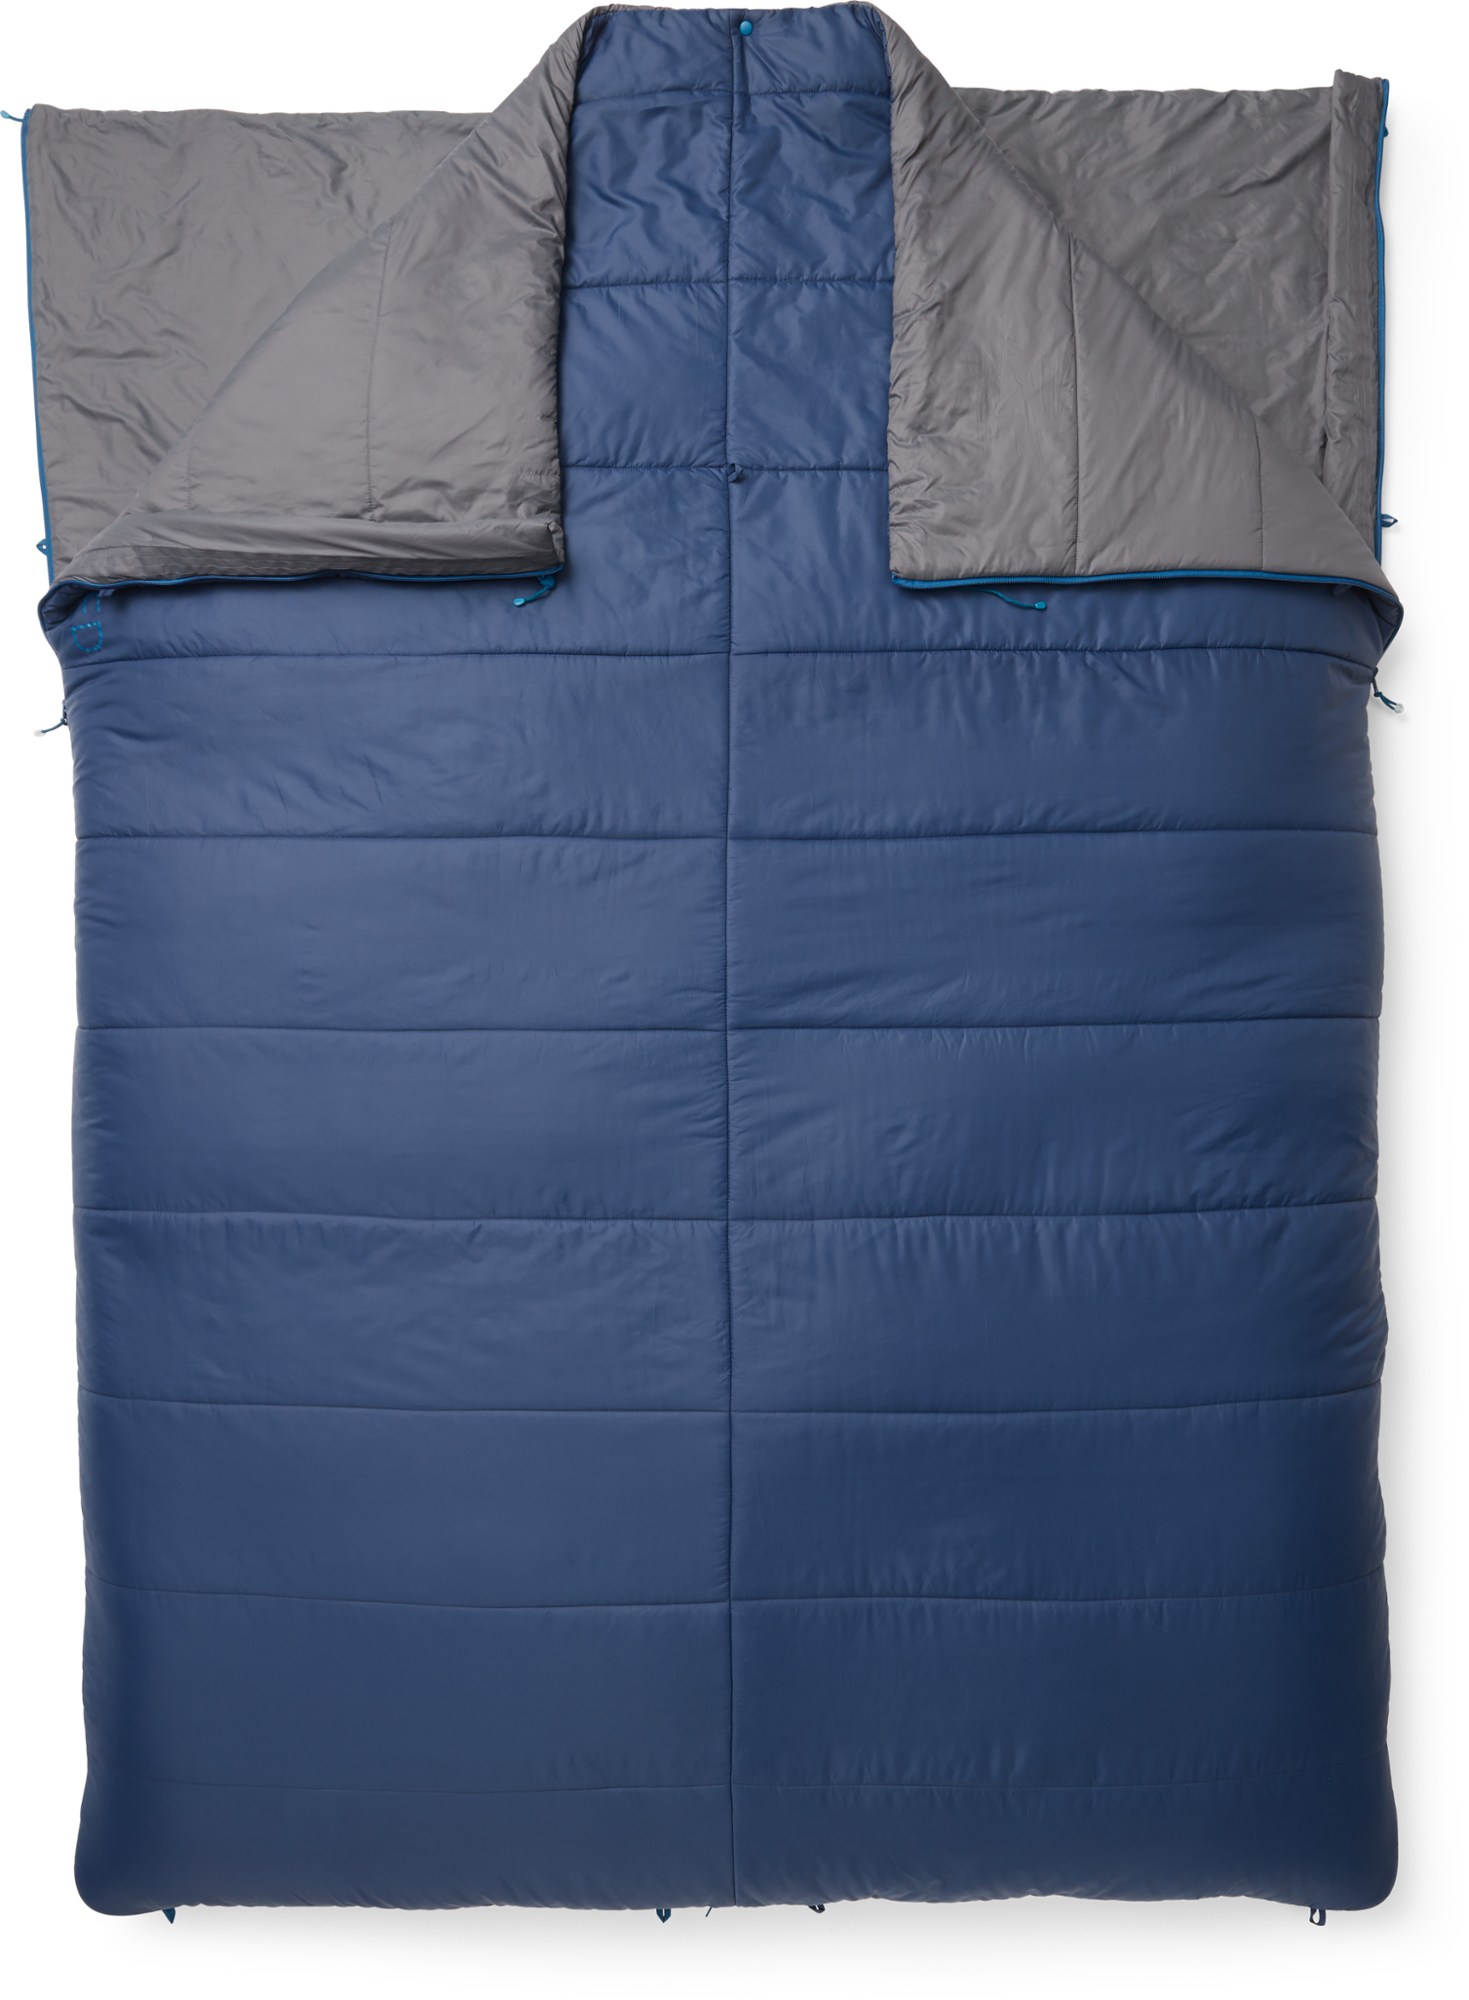 Двуспальный спальный мешок MegaSleep Duo 25/40 Exped, синий